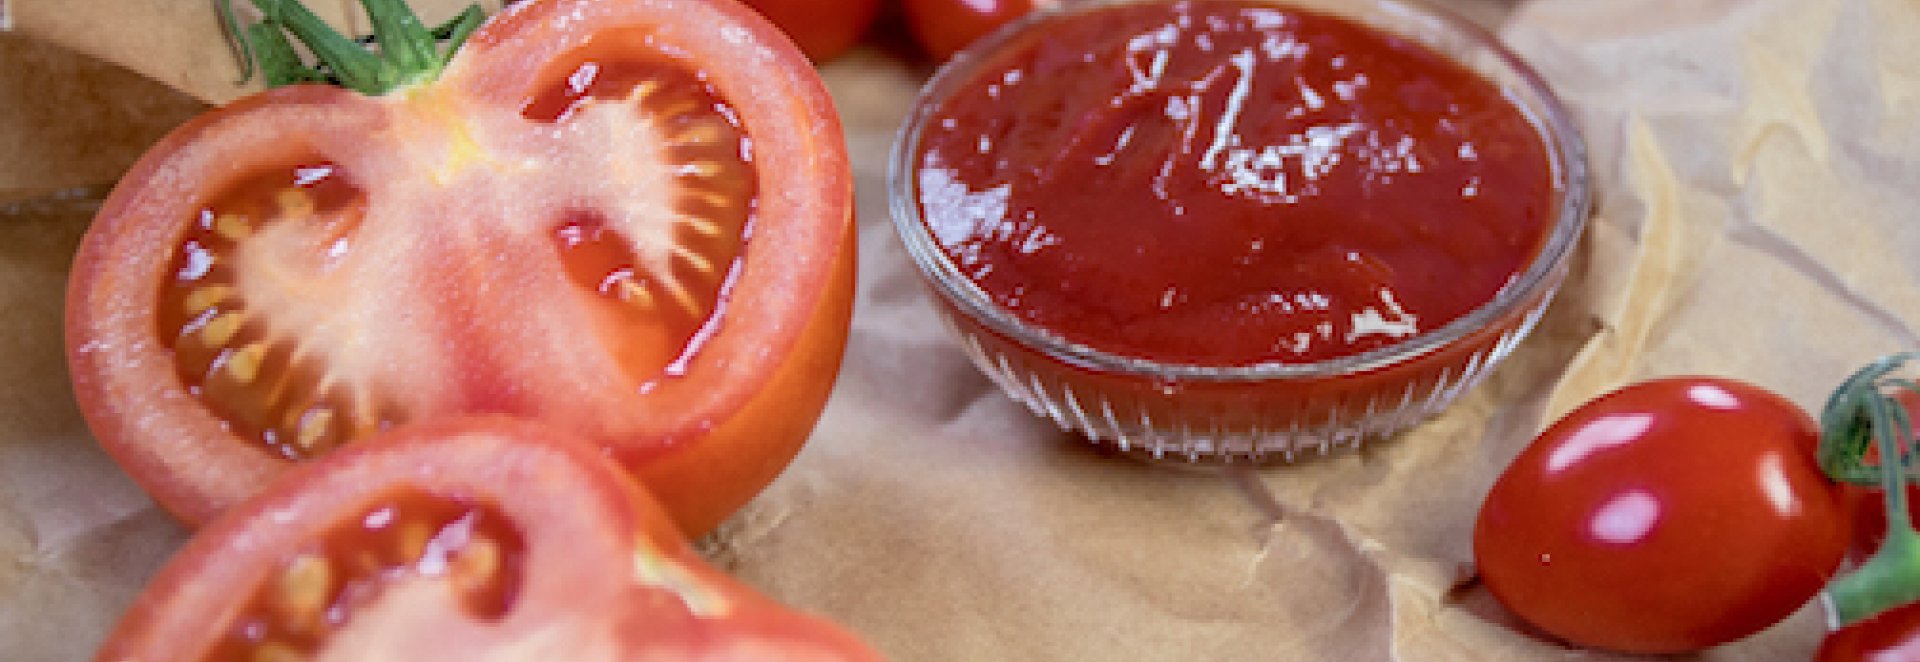 Tušíte, jak se označují kečupy s vyšším podílem rajčat?